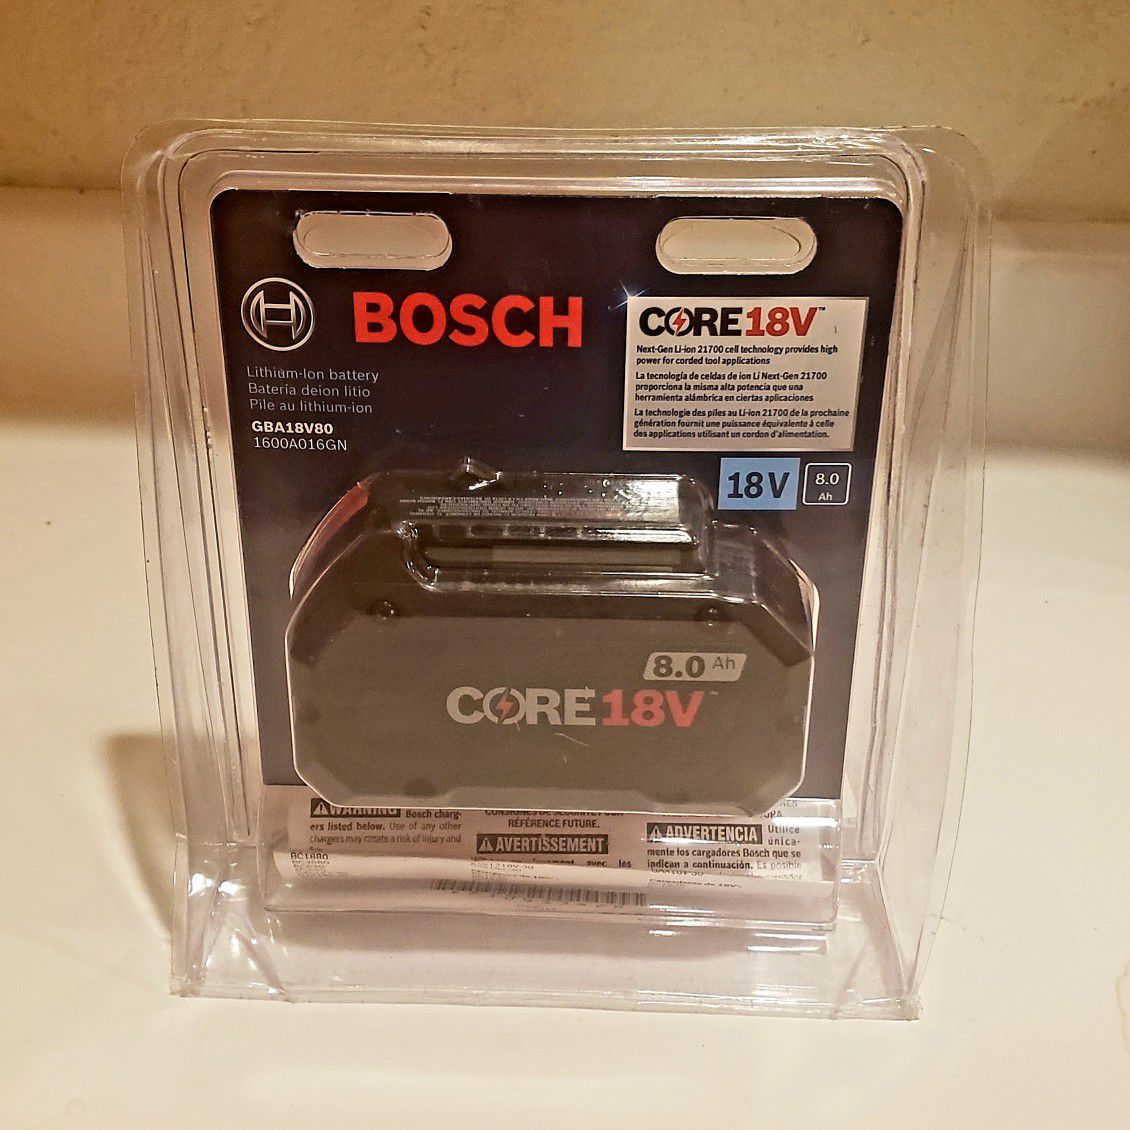 Bosch power Tool Battery - Core 18V - 8.0 Amp - Brand New Battery